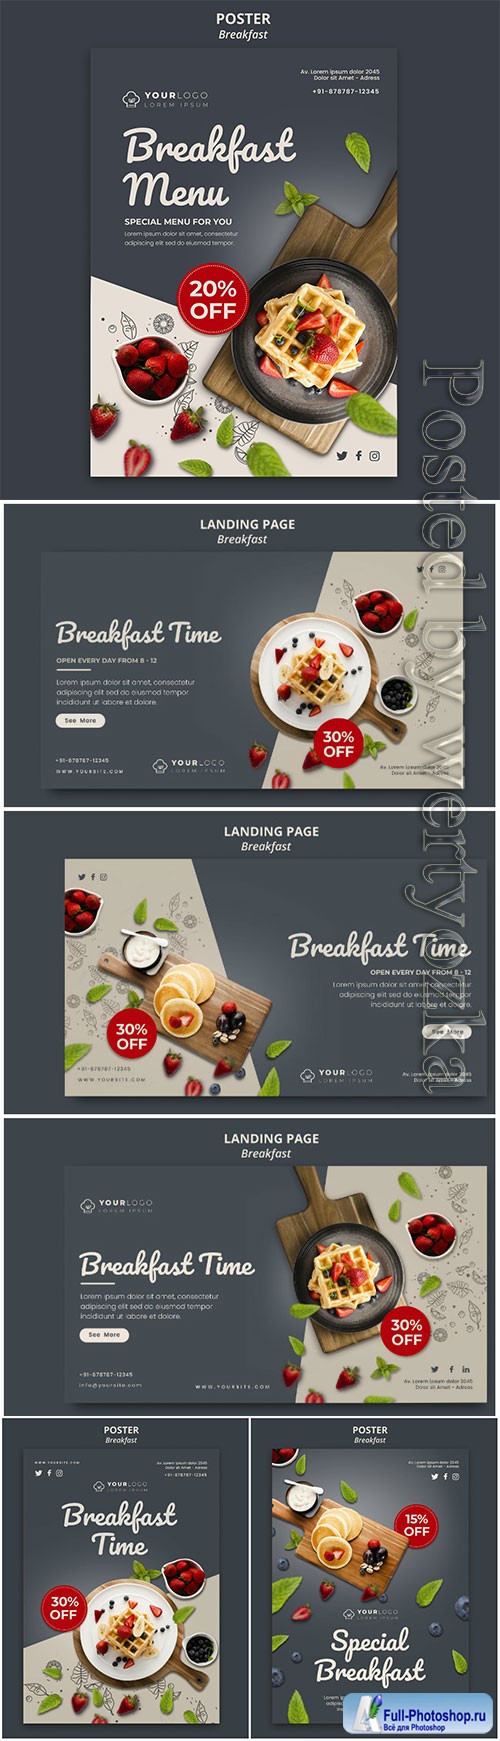 Breakfast time flyer template